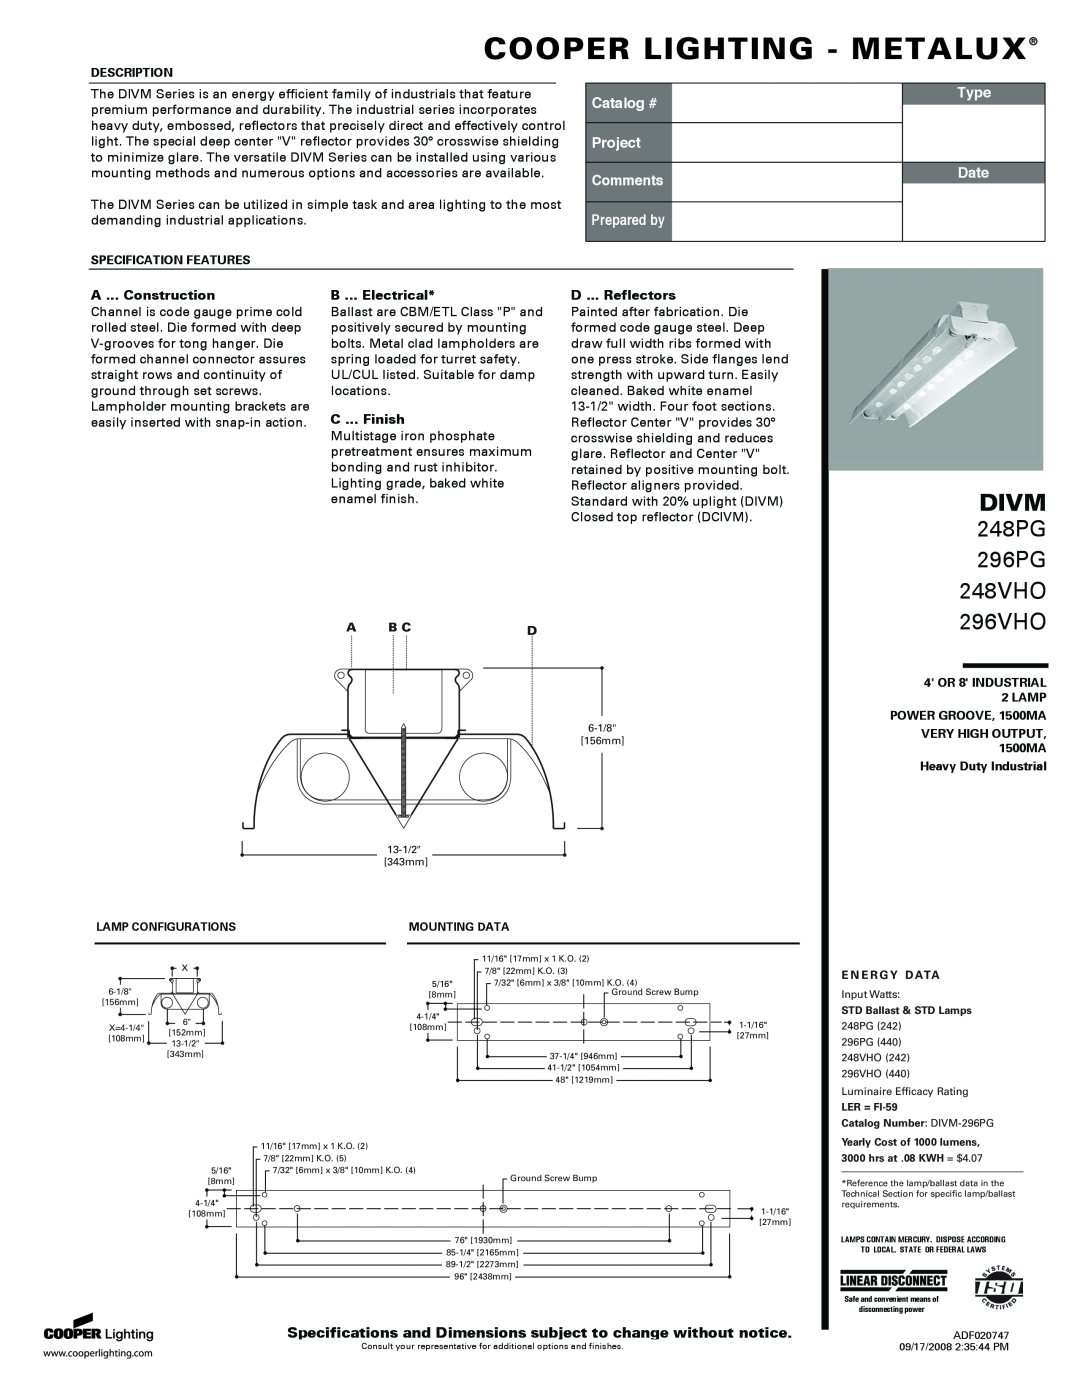 Cooper Lighting P4SP-MX SE specifications Cooper Lighting - Metalux, Divm, 248PG 296PG 248VHO, 296VHO, Catalog #, Type 